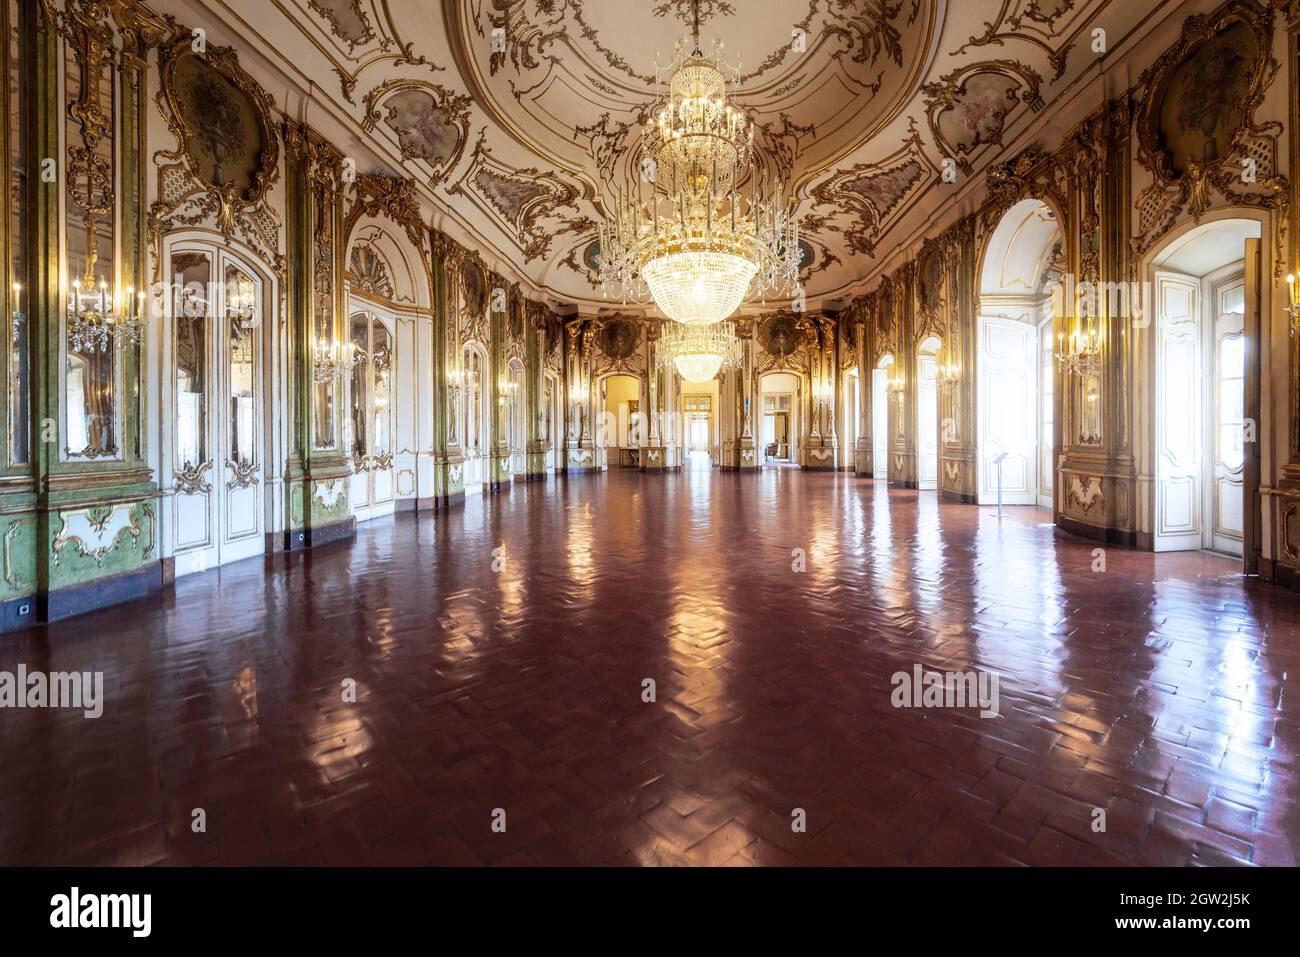 Salle de bal ou salle du Trône à l'intérieur du palais Queluz - Queluz, Portugal Banque D'Images